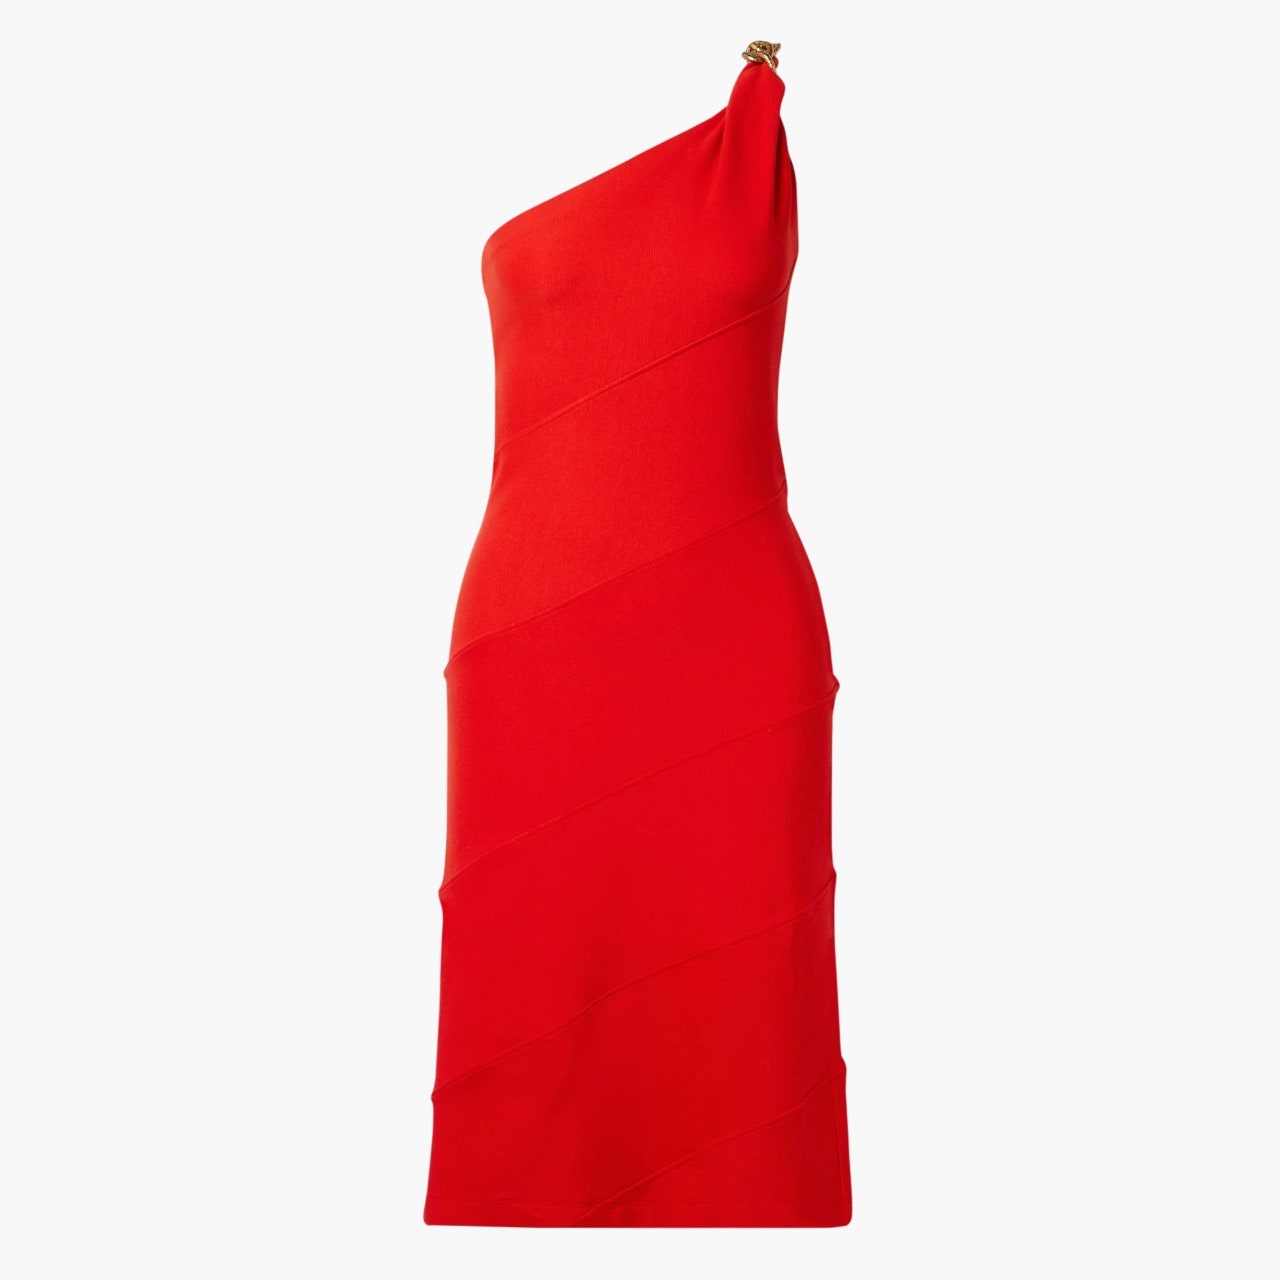 Асимметричное платье средней длины Givenchy 110571 рубль netaporter.com